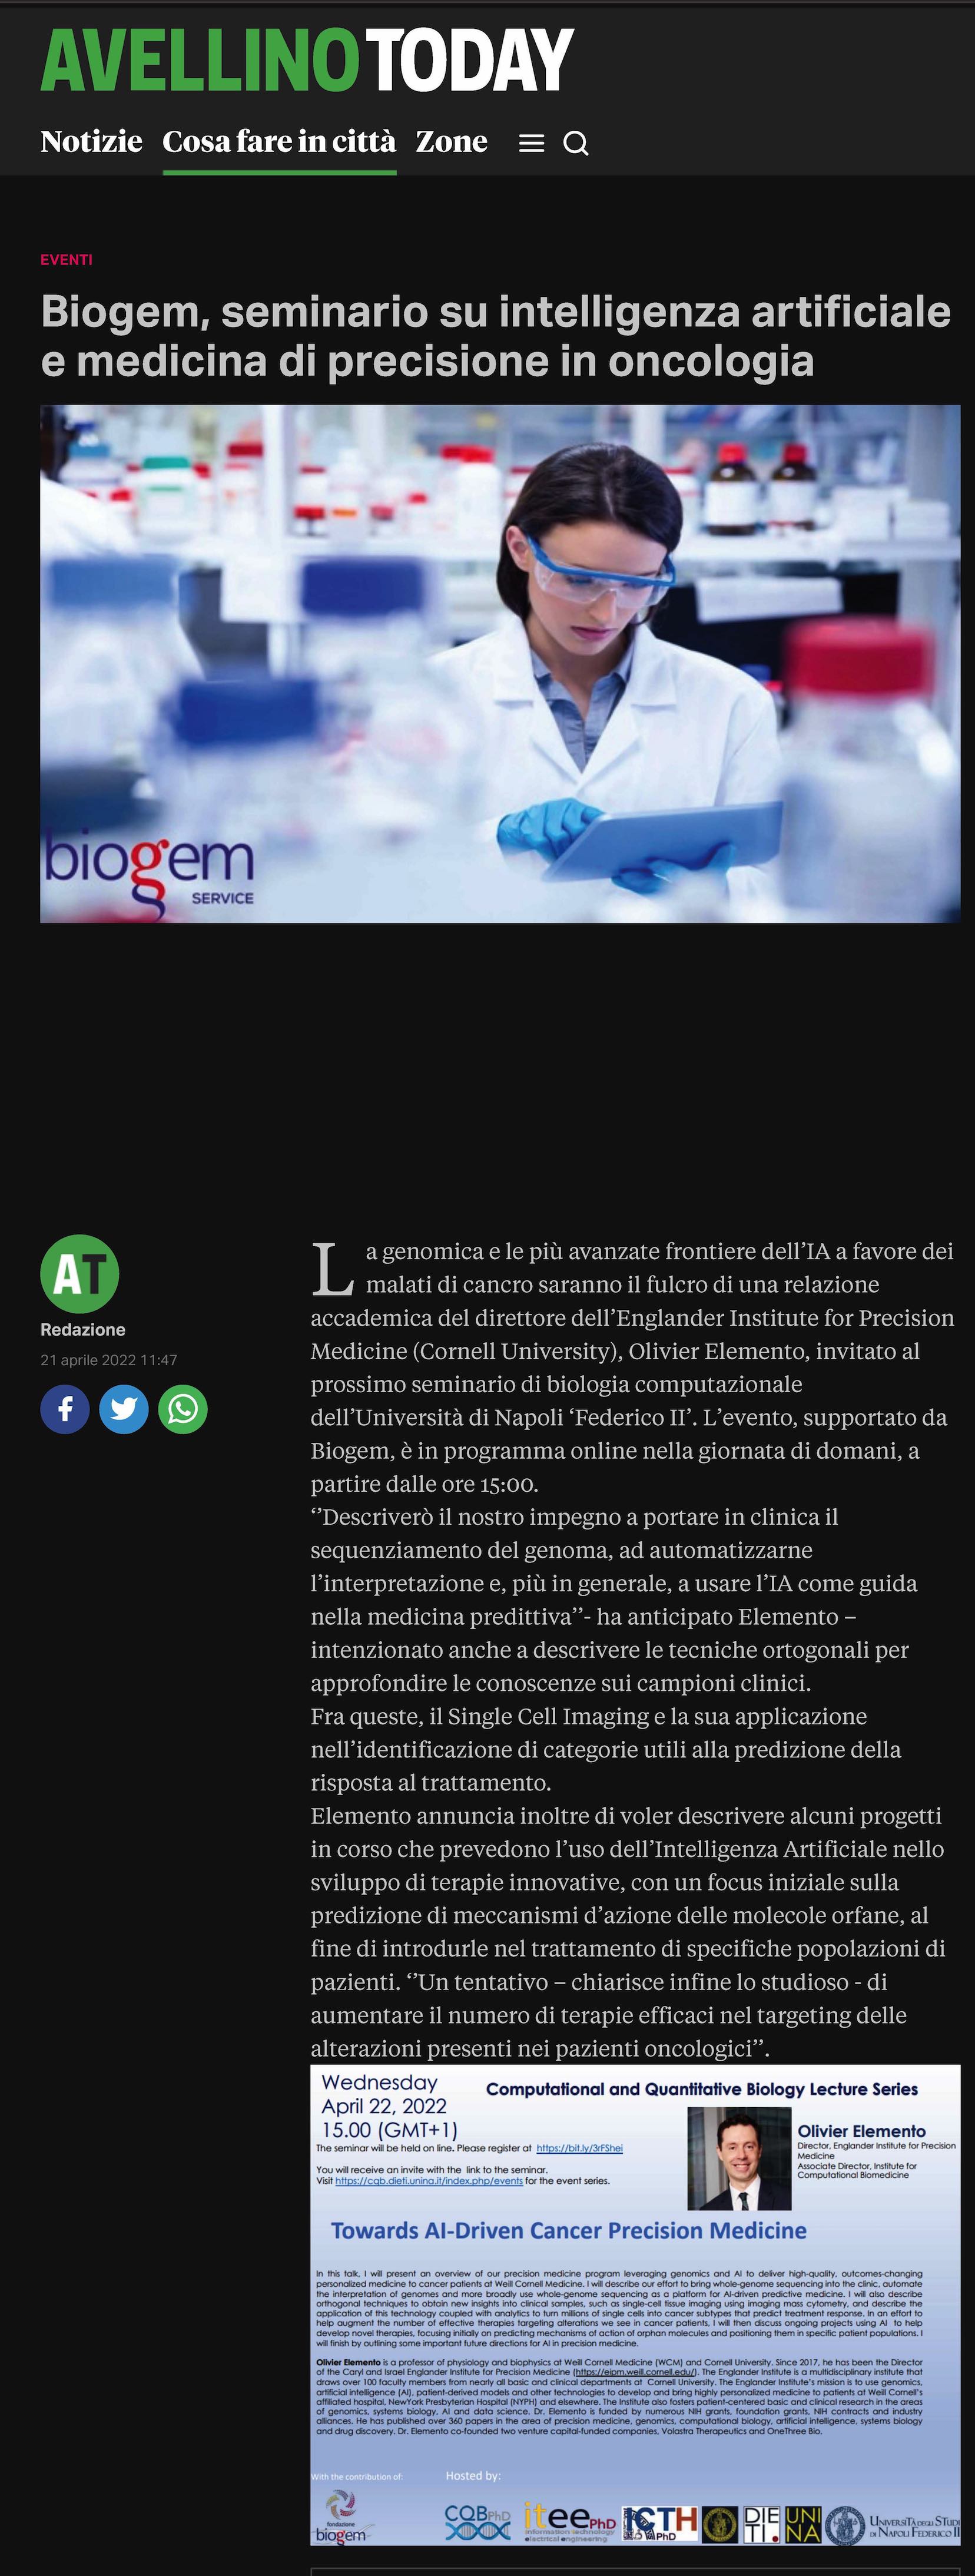 Biogem, seminario su intelligenza artificiale e medicina di precisione in oncologia